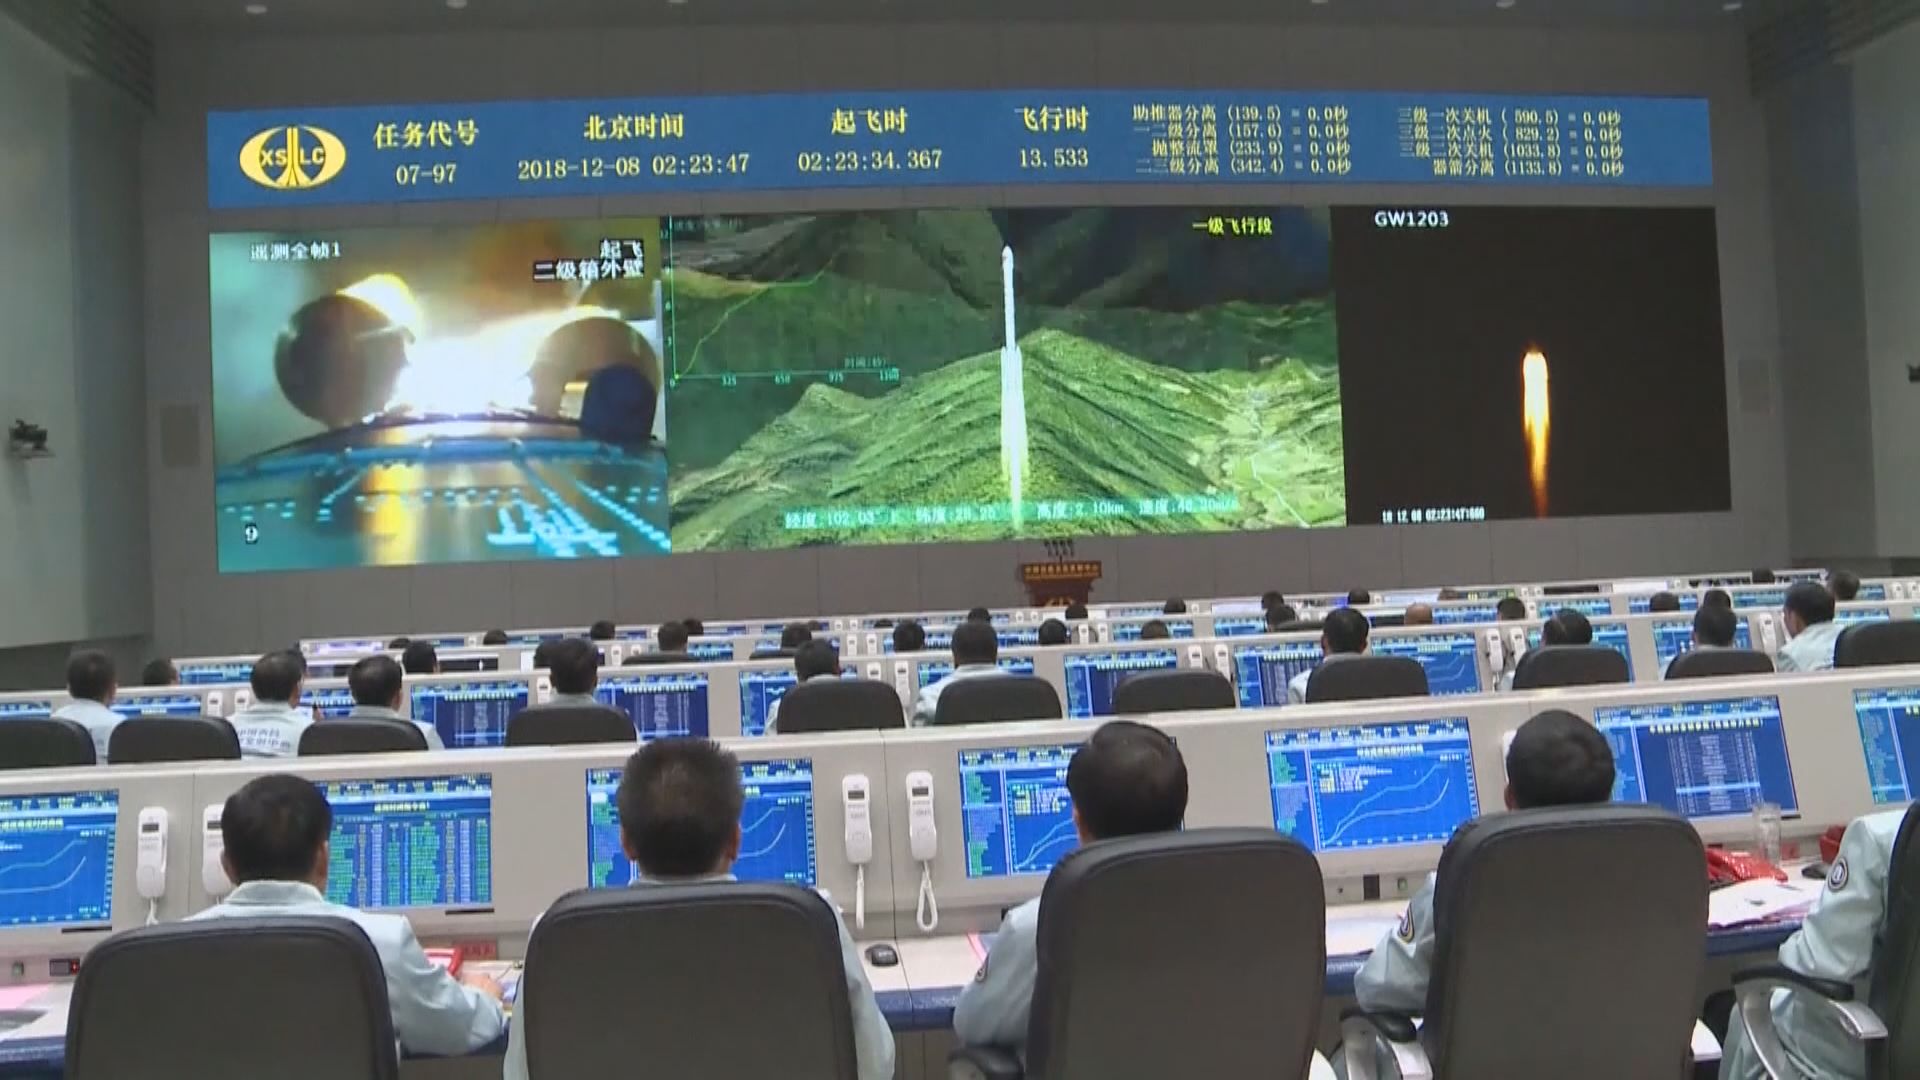 中國已具備條件開展載人月球探測工程